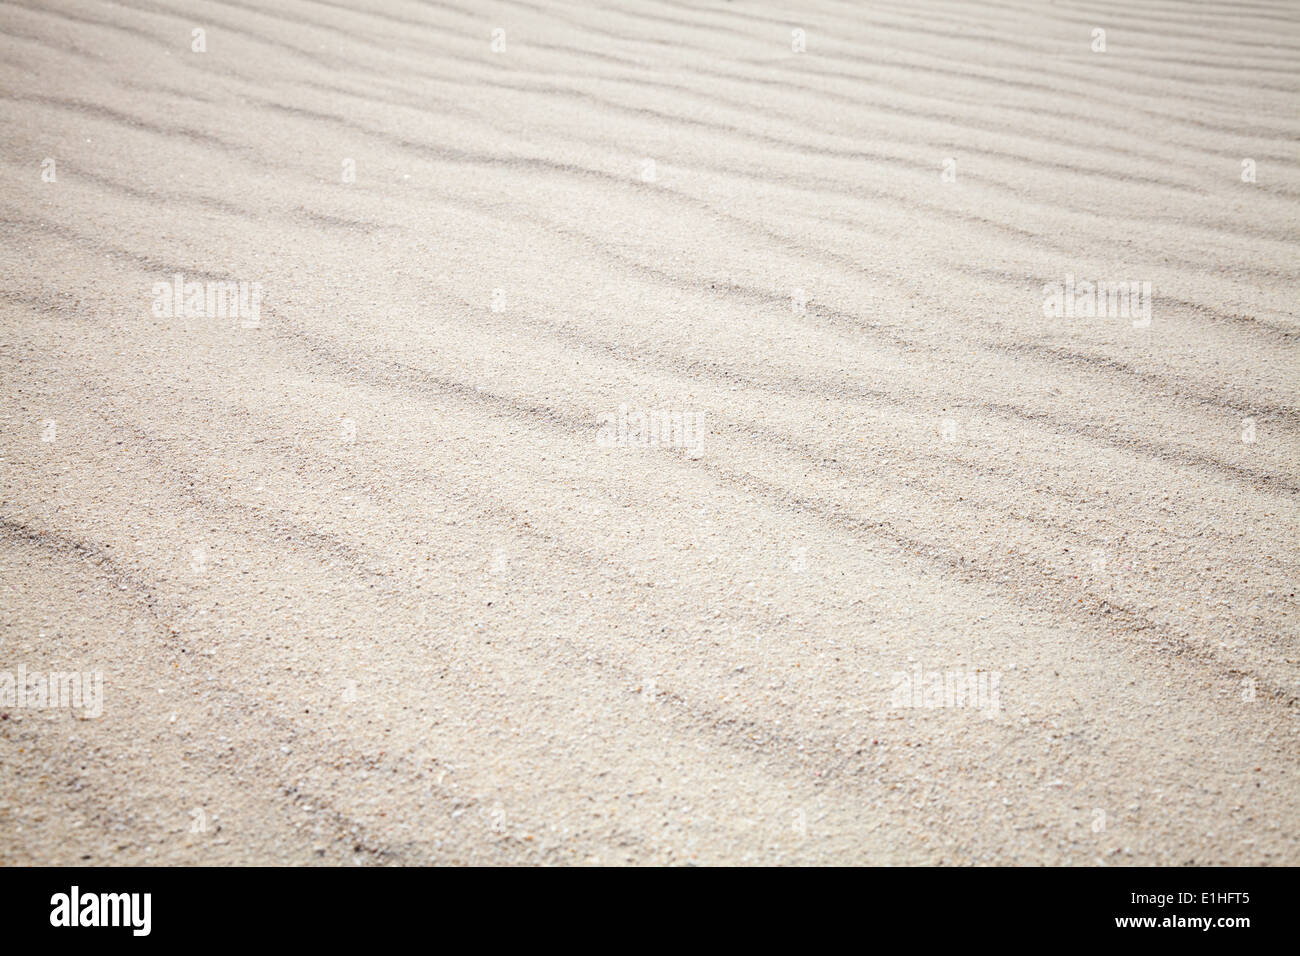 Weiße Sandstrände mit Wellen-Muster. Hintergrundtextur Stockfoto